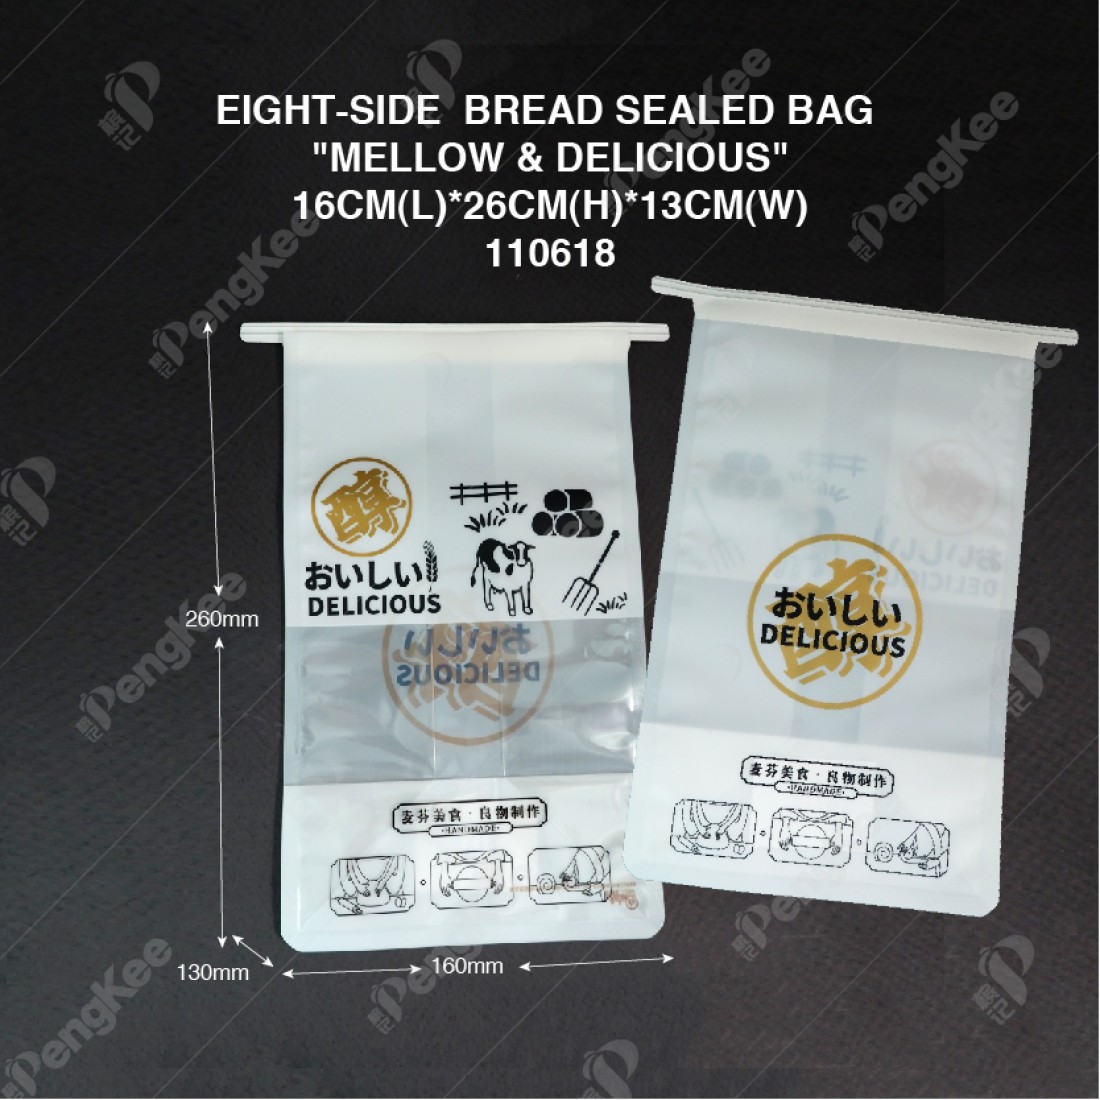 EIGHT-SIDE  BREAD SEALED BAG "MELLOW & DELICIOUS"16CM(L)*26CM(H)*13CM(W) (CM)50'S